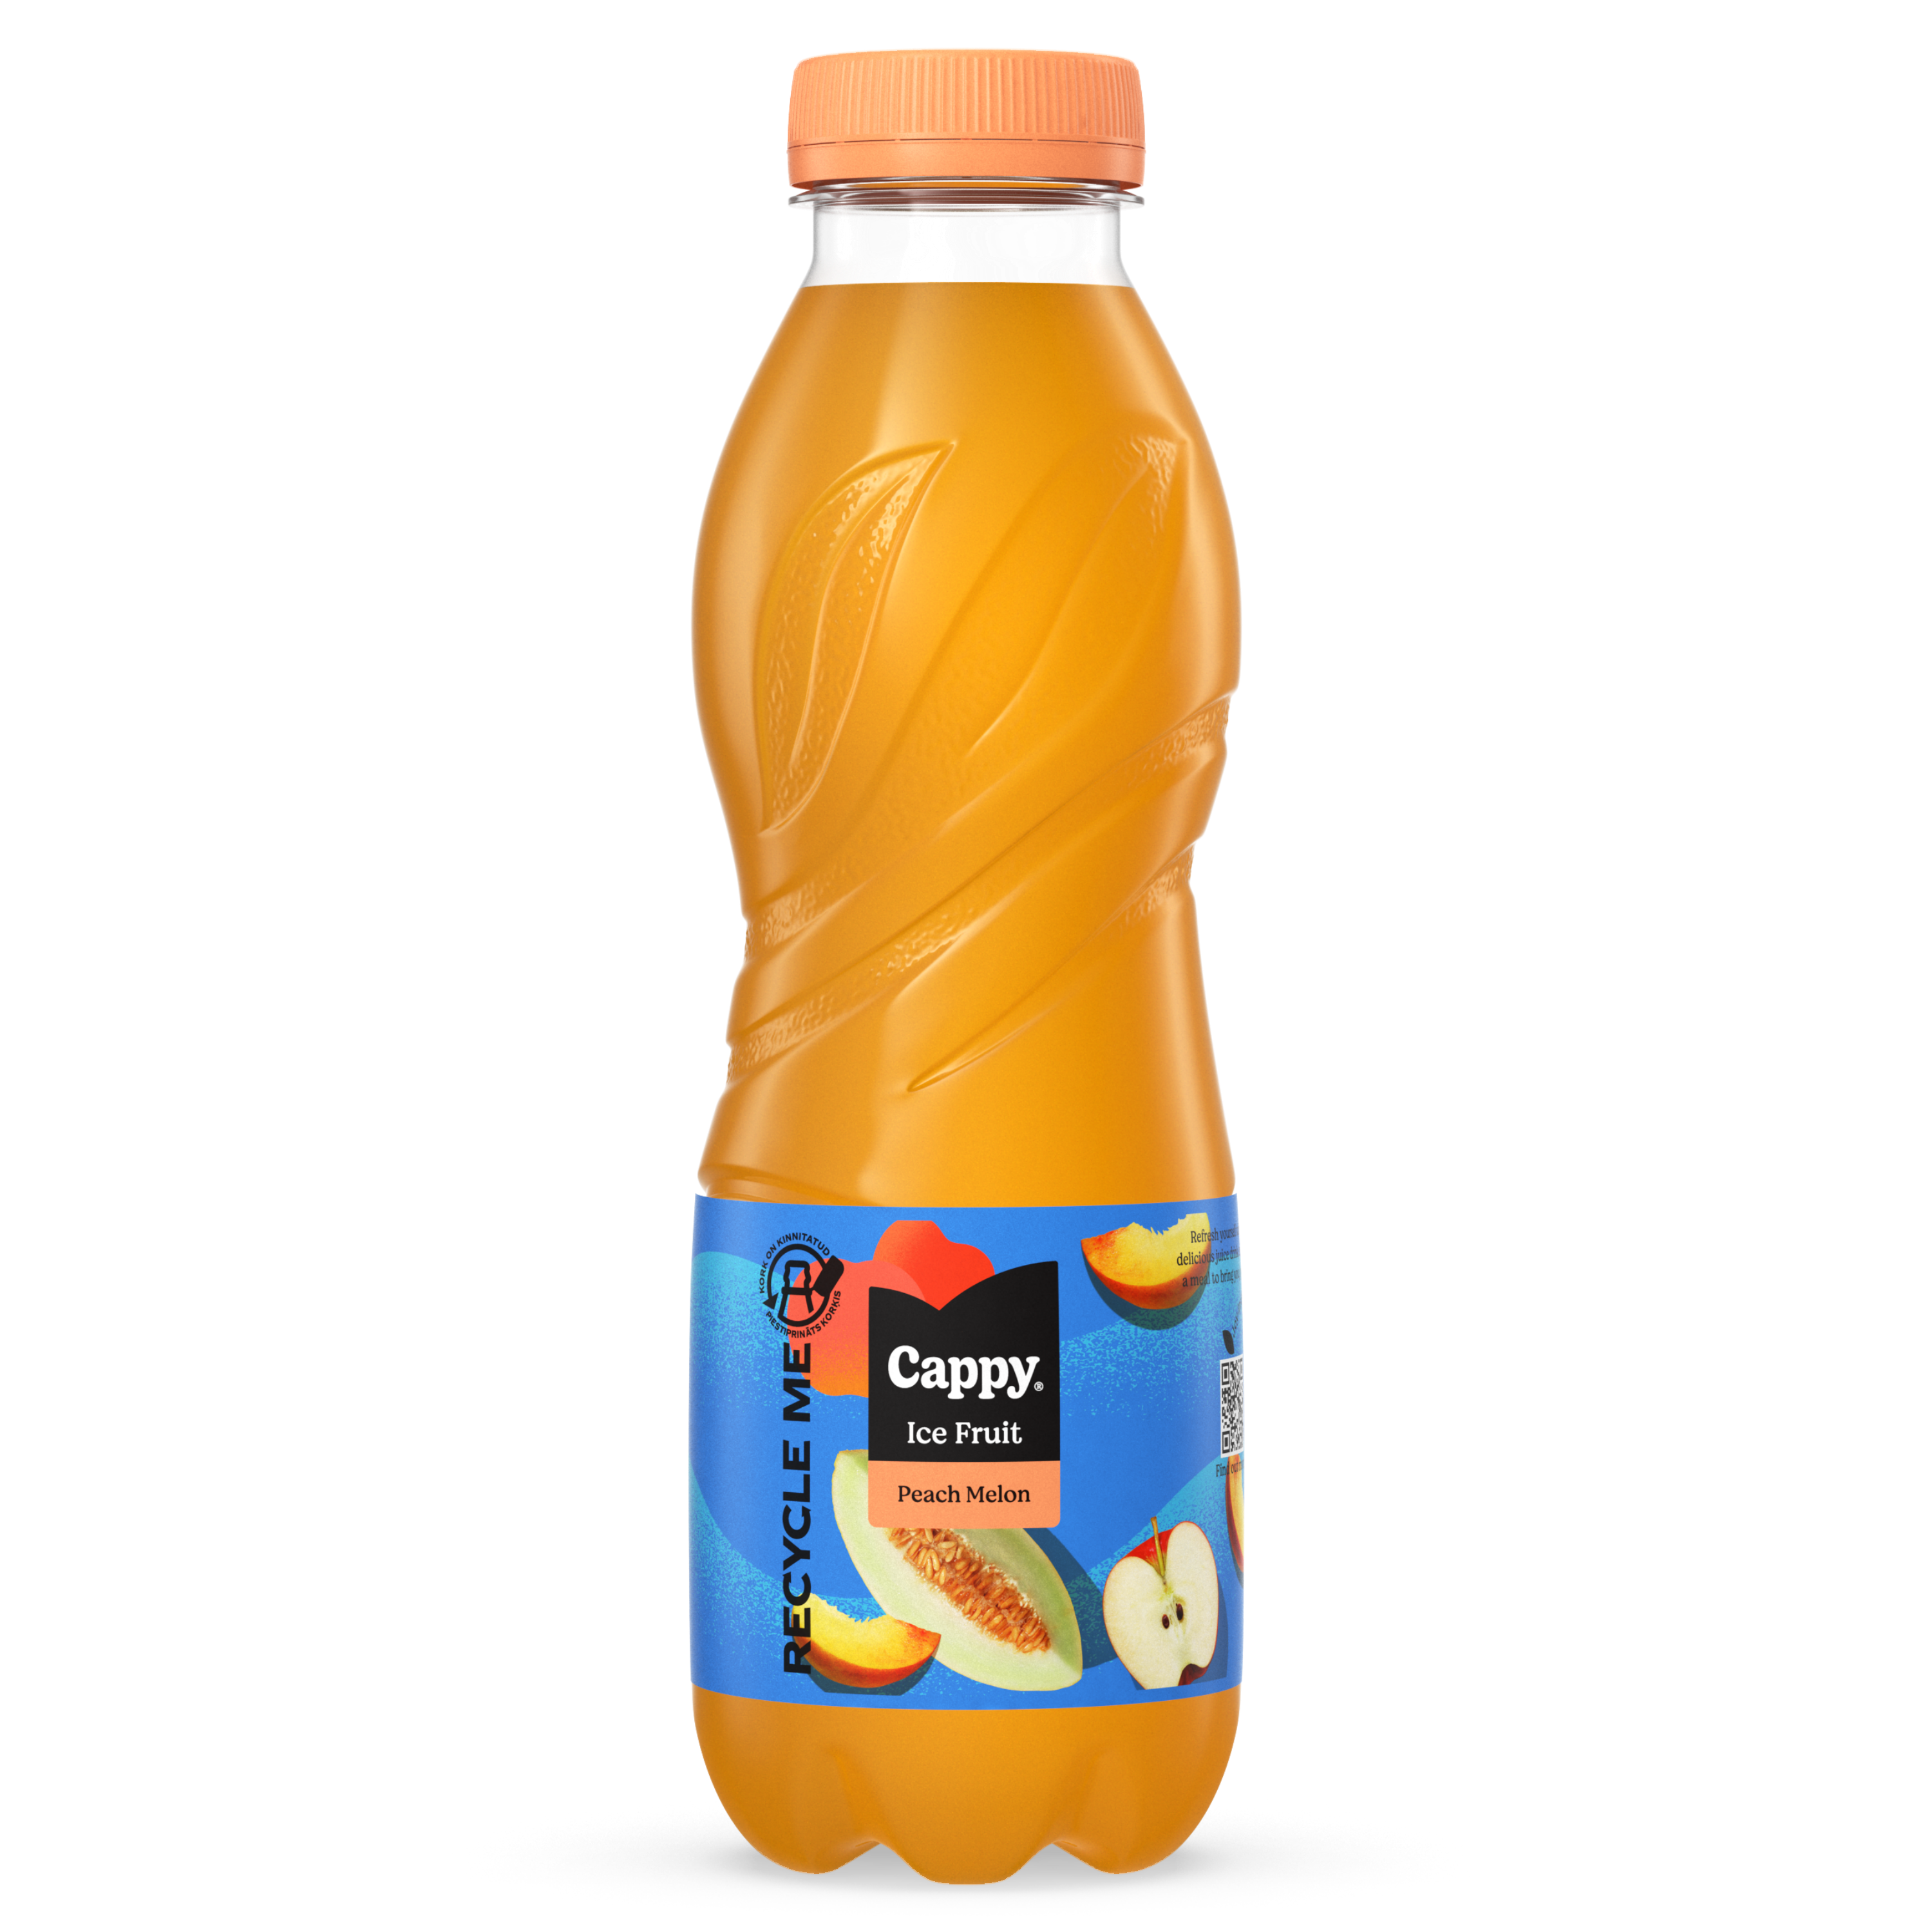 Cappy Ice Fruit Orage Mix, Õuna-apelsini-laimimahlajook, kaktuse maitsega, pudel 500ml